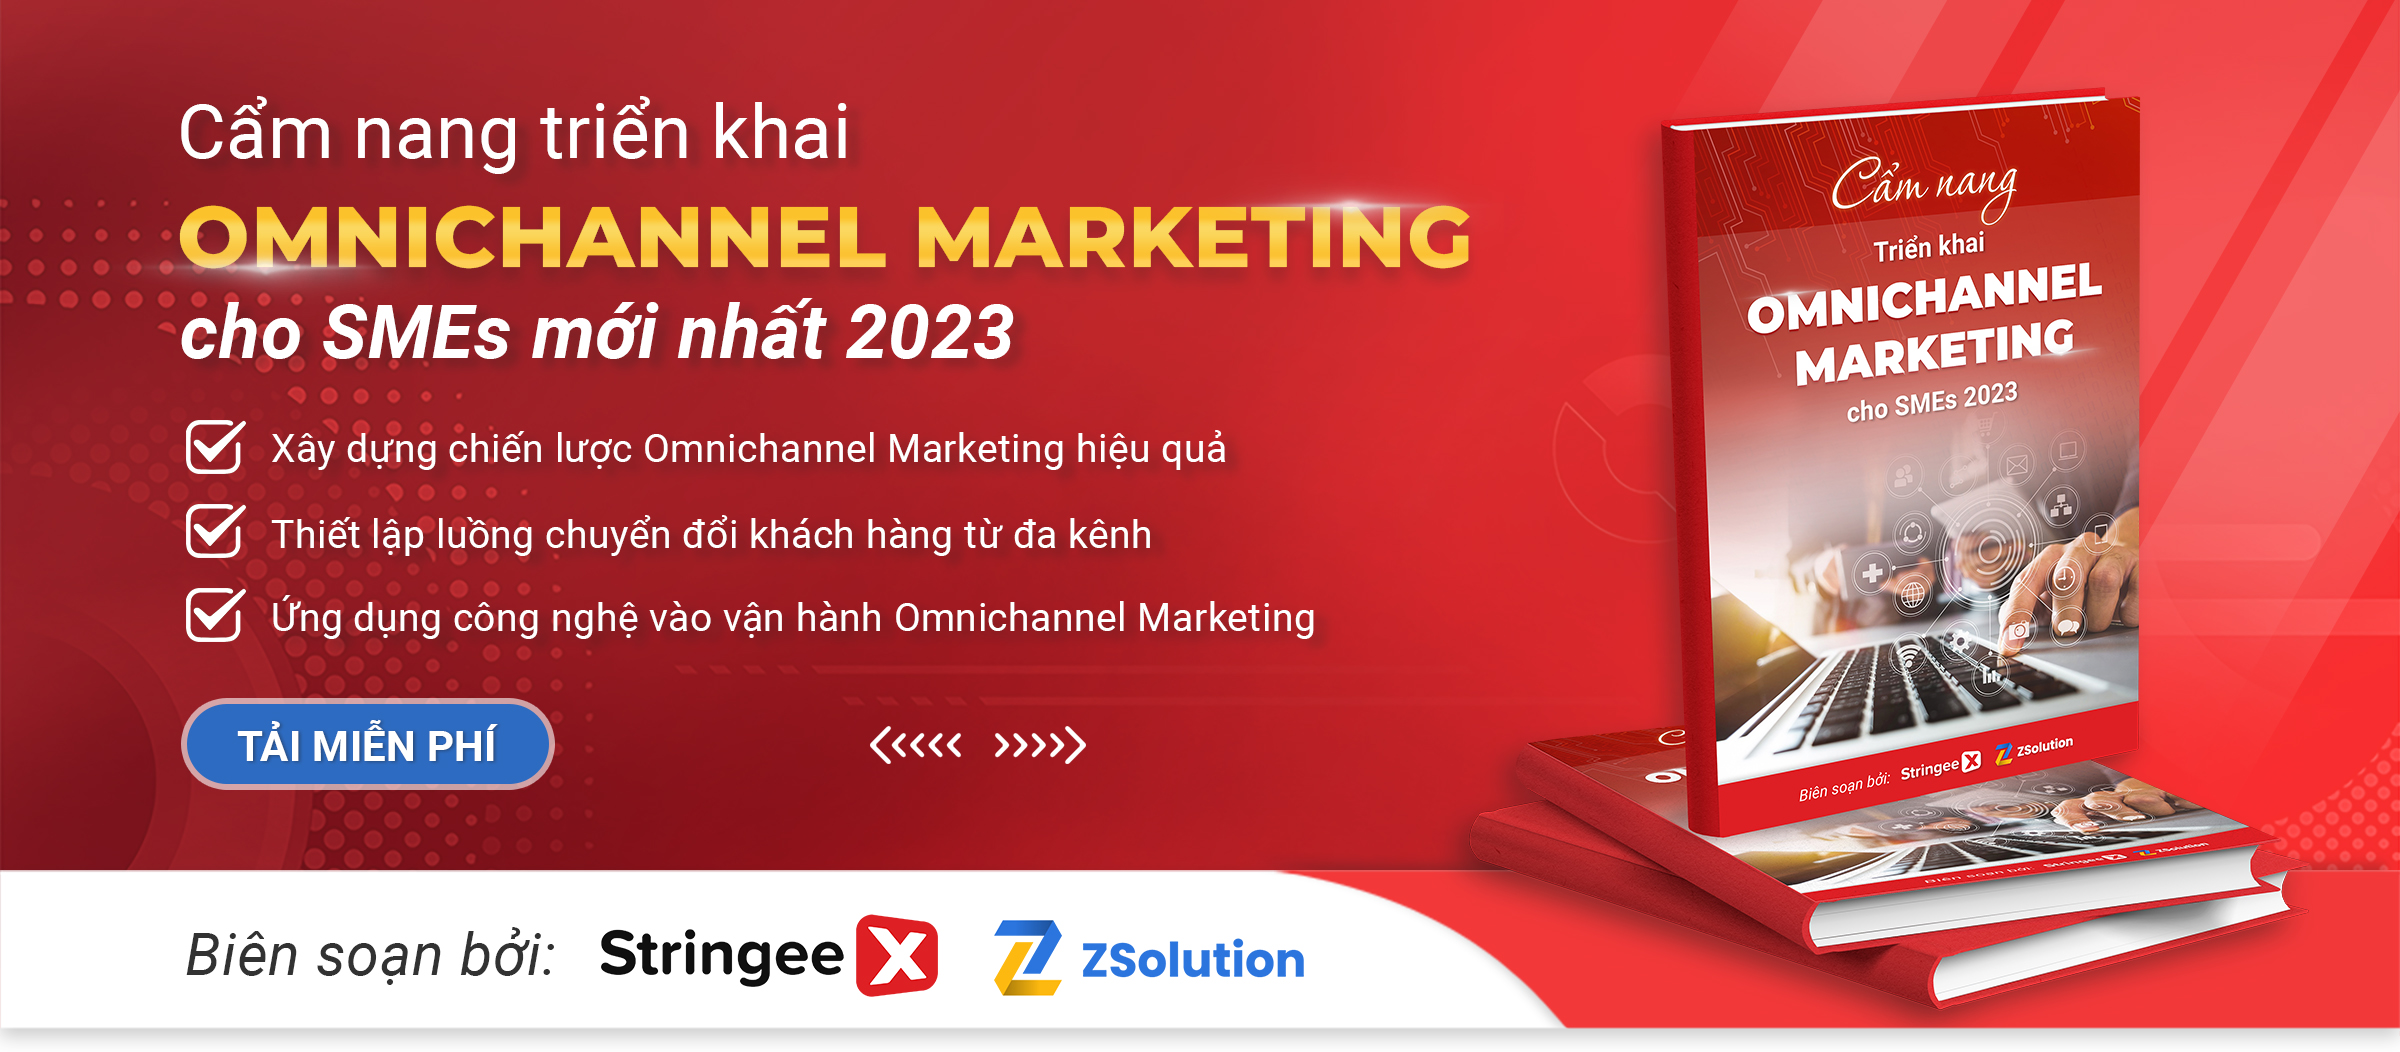 Tải ngay: Cẩm nang triển khai Omnichannel Marketing cho SMEs mới nhất 2023